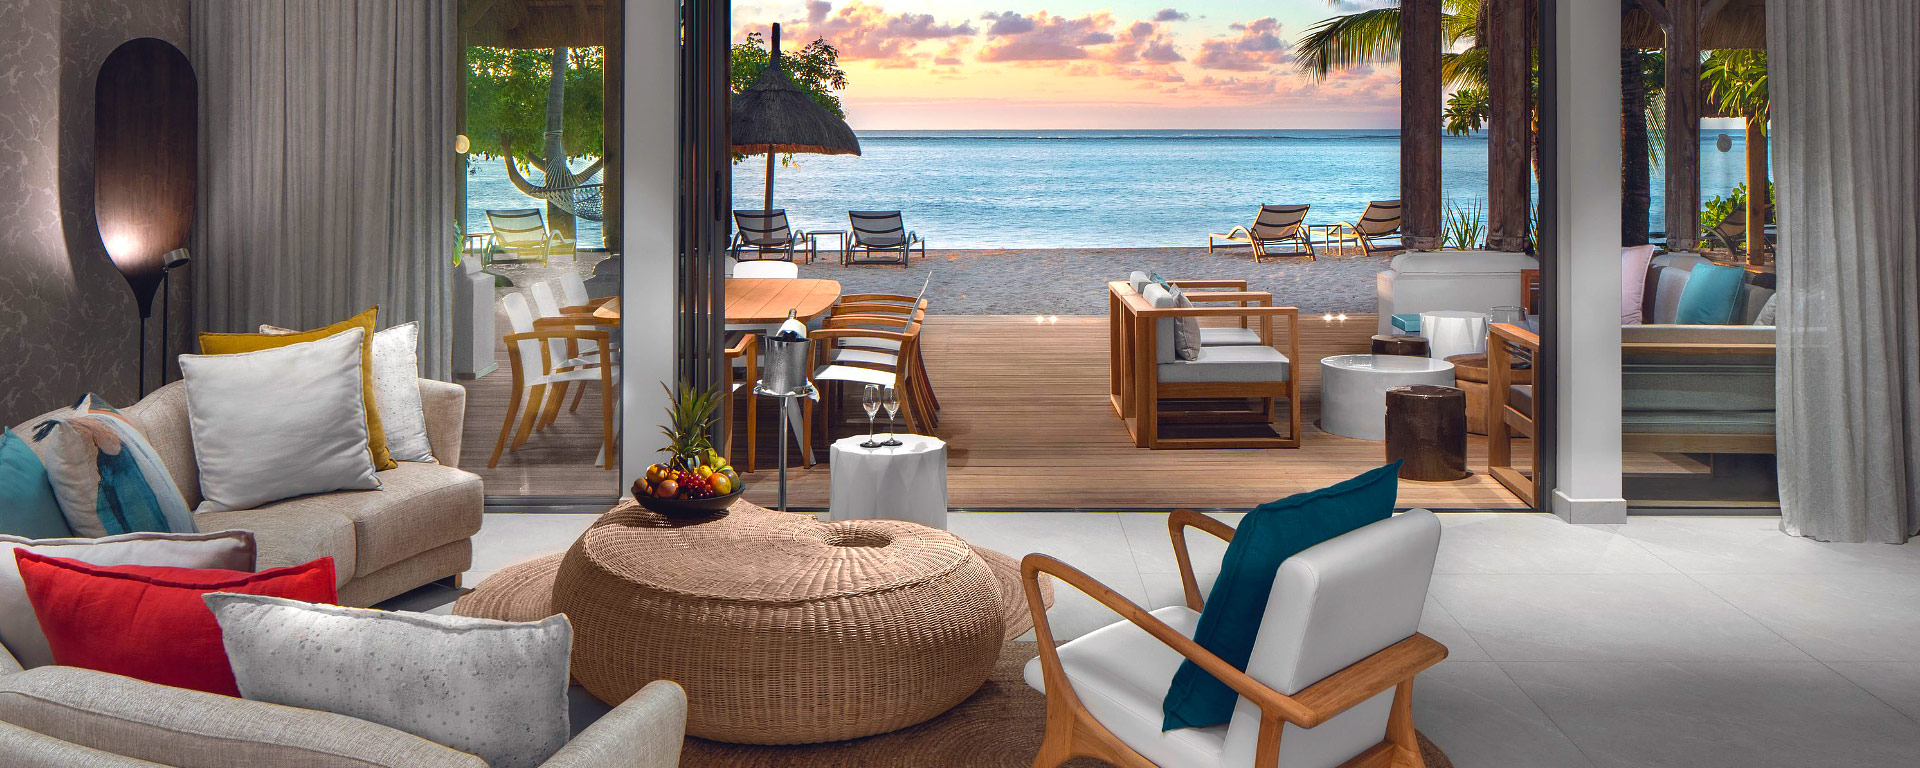 Paradis Beachcomber rooms in Mauritius